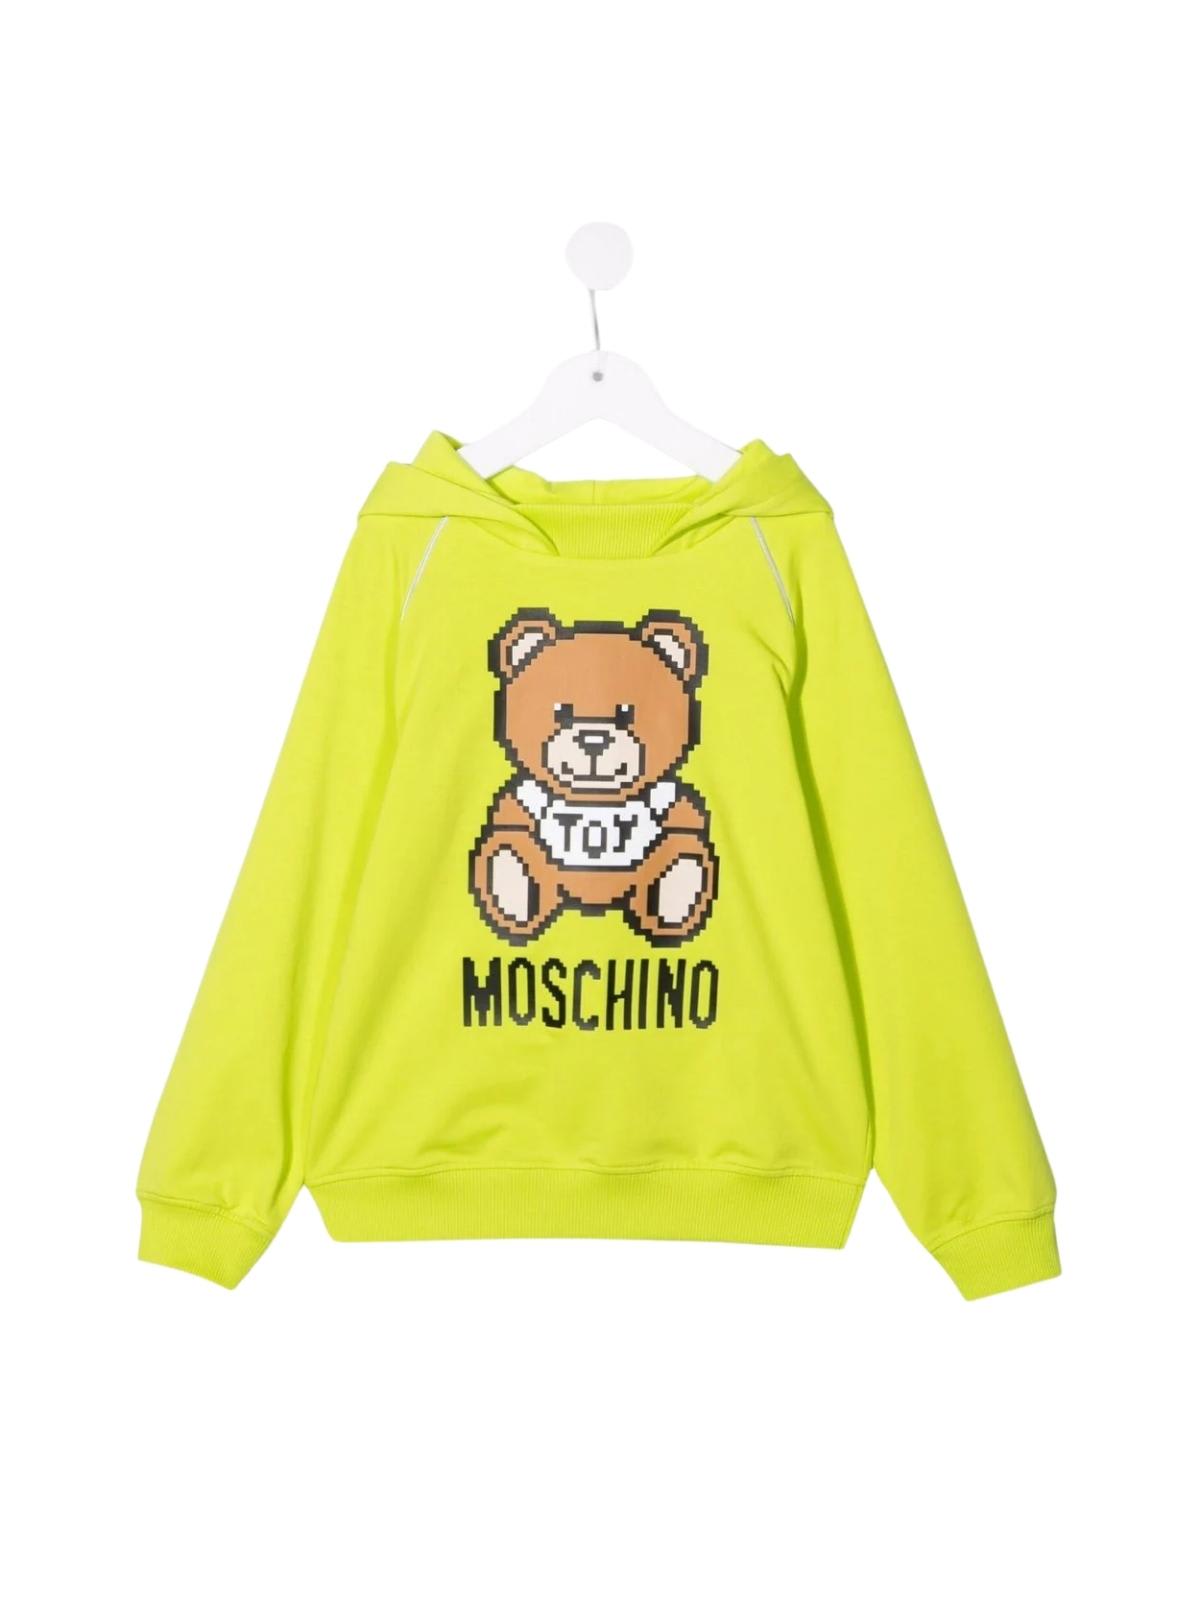 Moschino Hooded Sweatshirt With Print